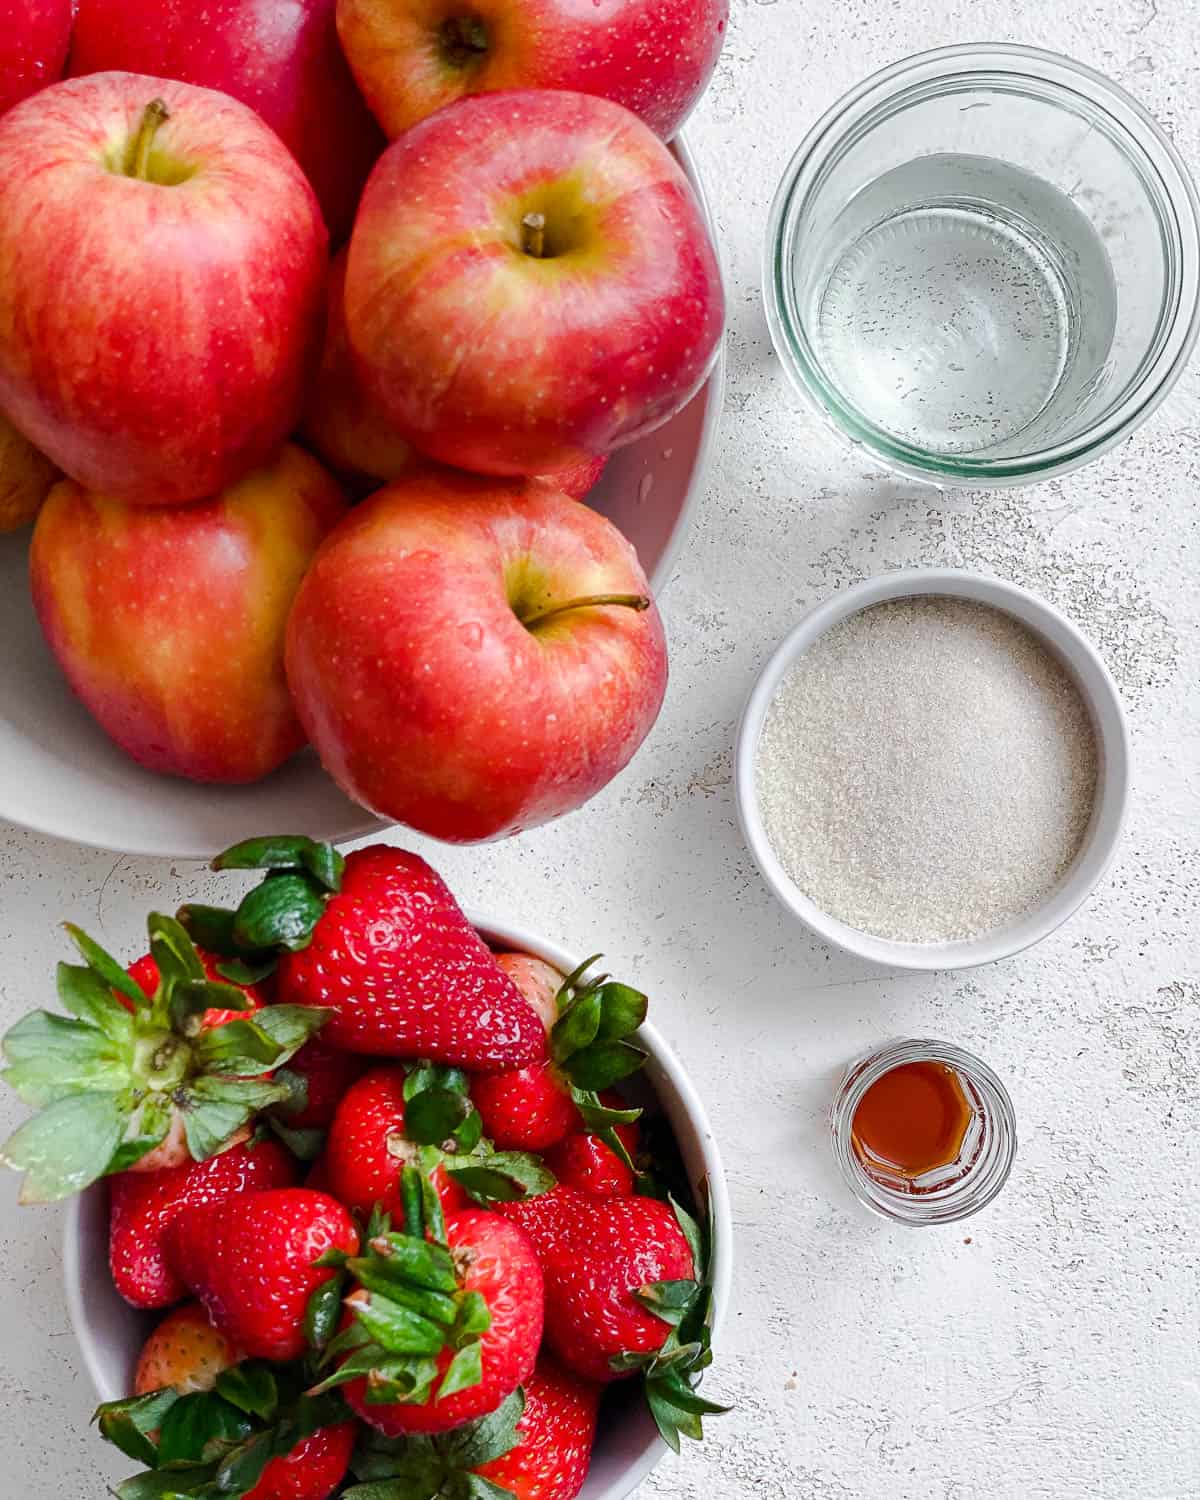 مواد تشکیل دهنده سس سیب توت فرنگی آسان با یک سطح سفید اندازه گیری شده است